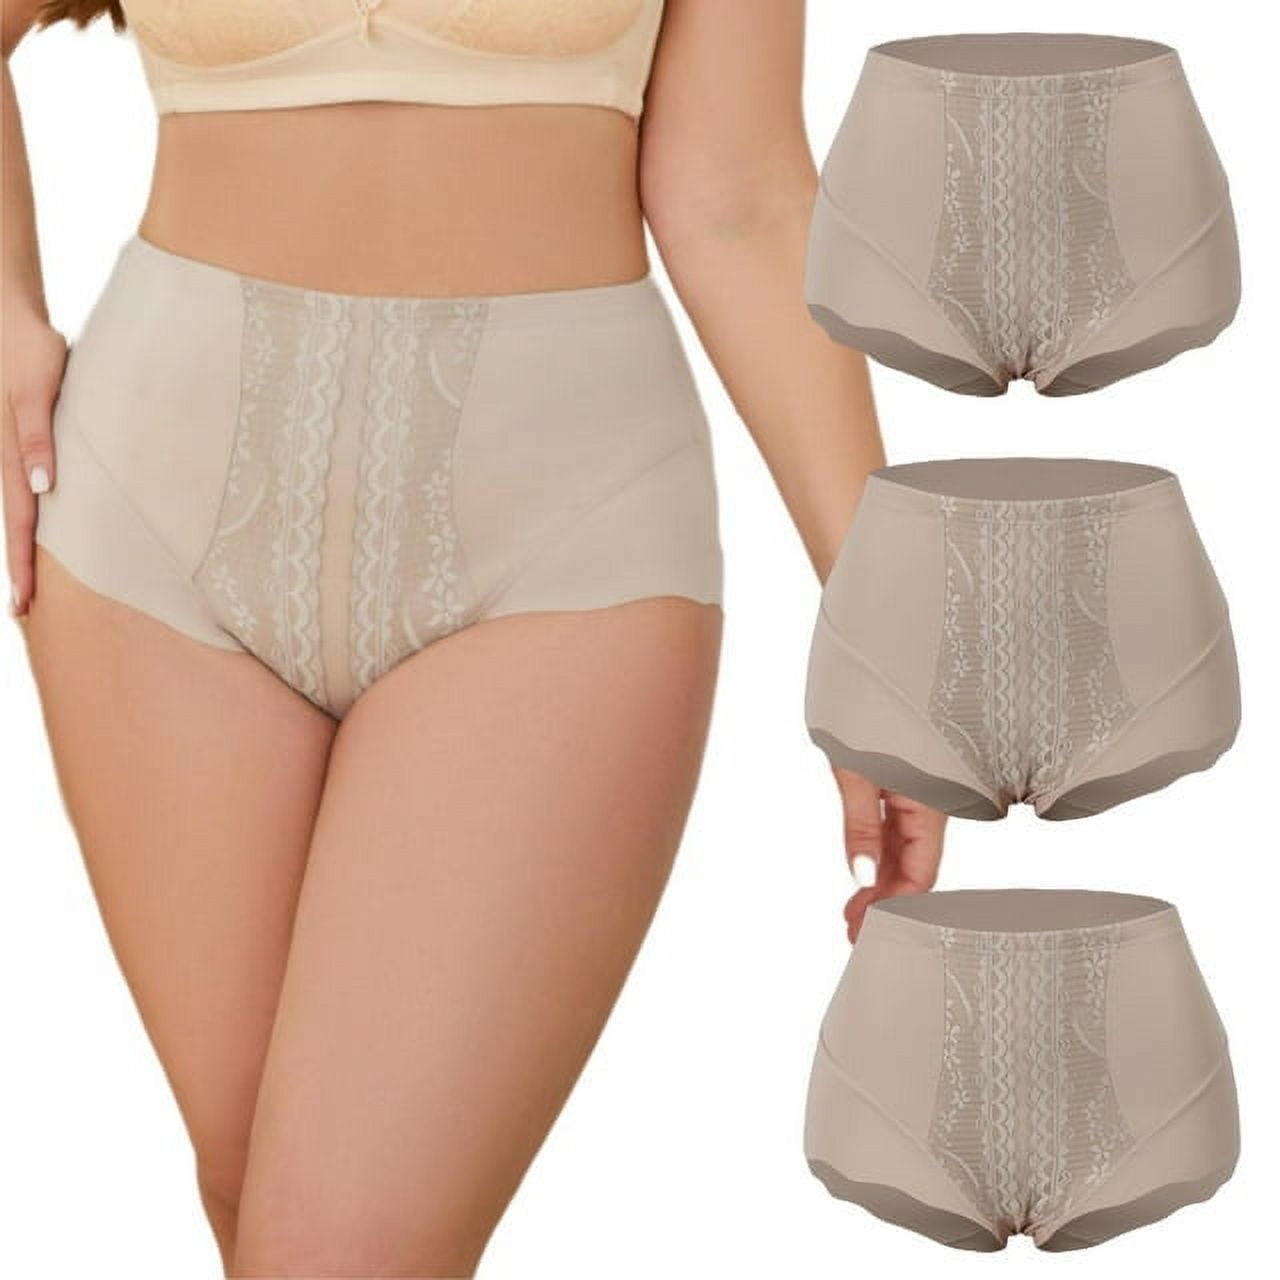 LEEy-world Women Underwear Womens High Waist Bottoming Belly Pants